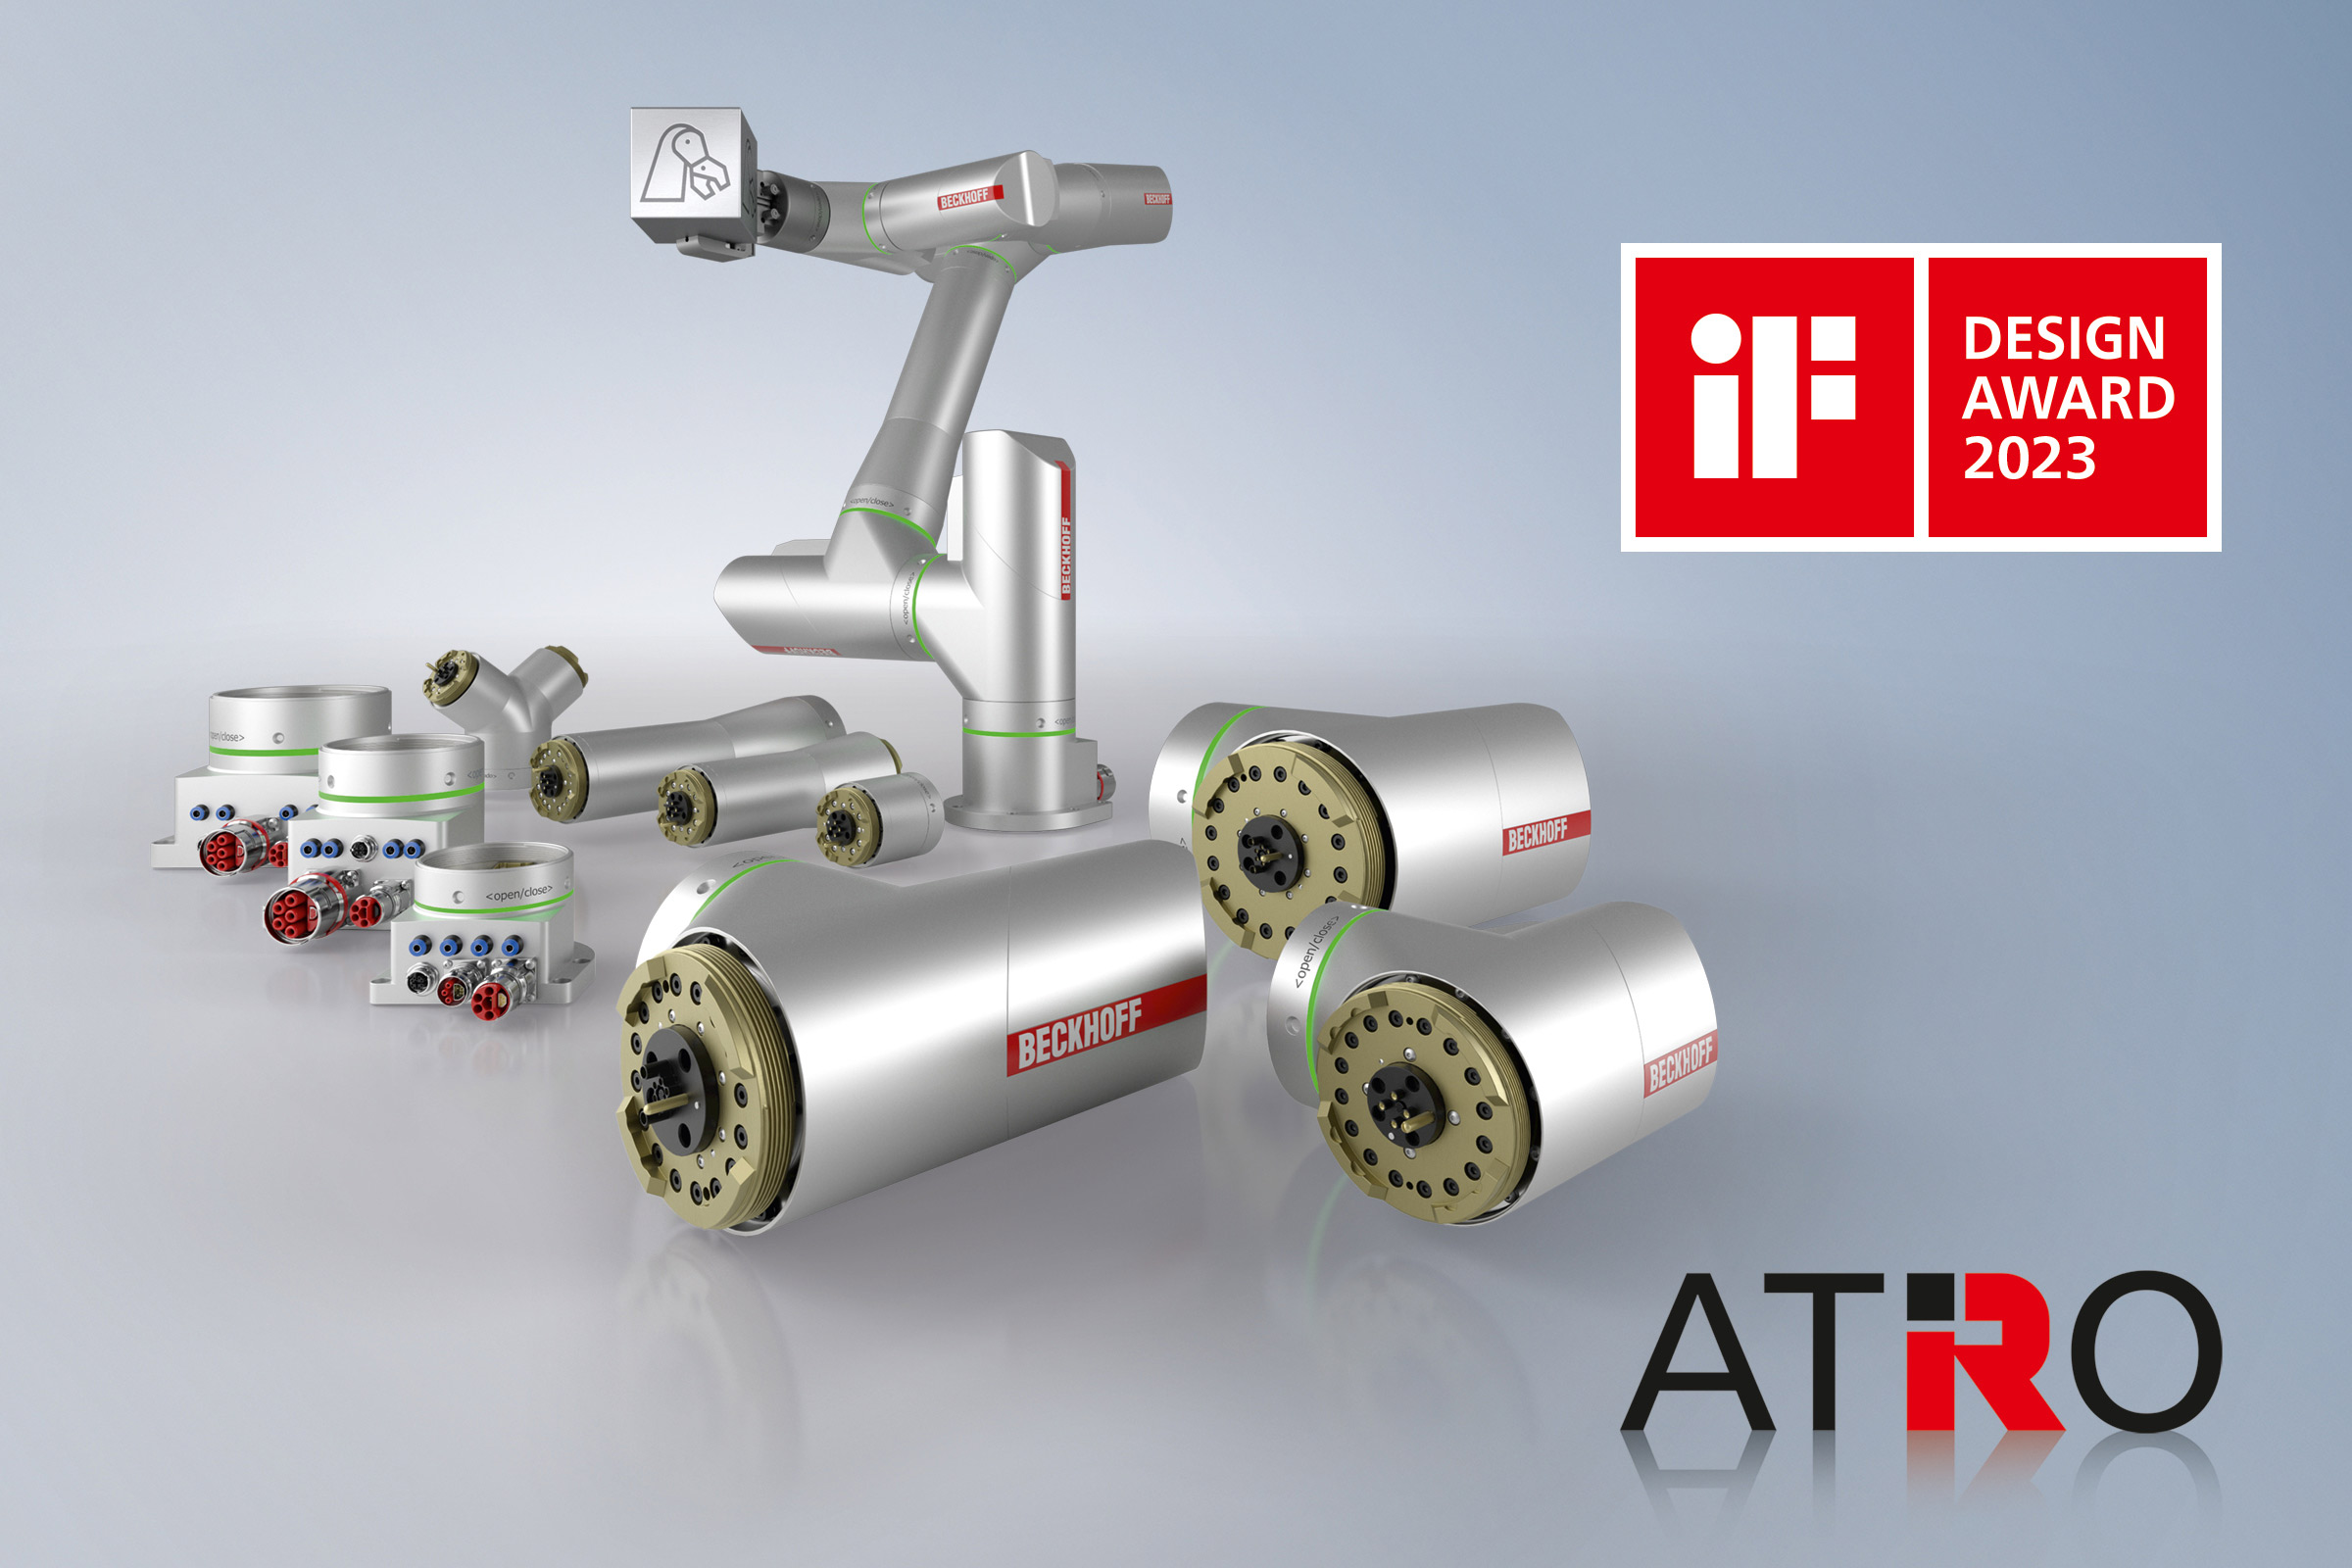 ATRO-System von Beckhoff: die komplette Maschine vollständig automatisiert. 